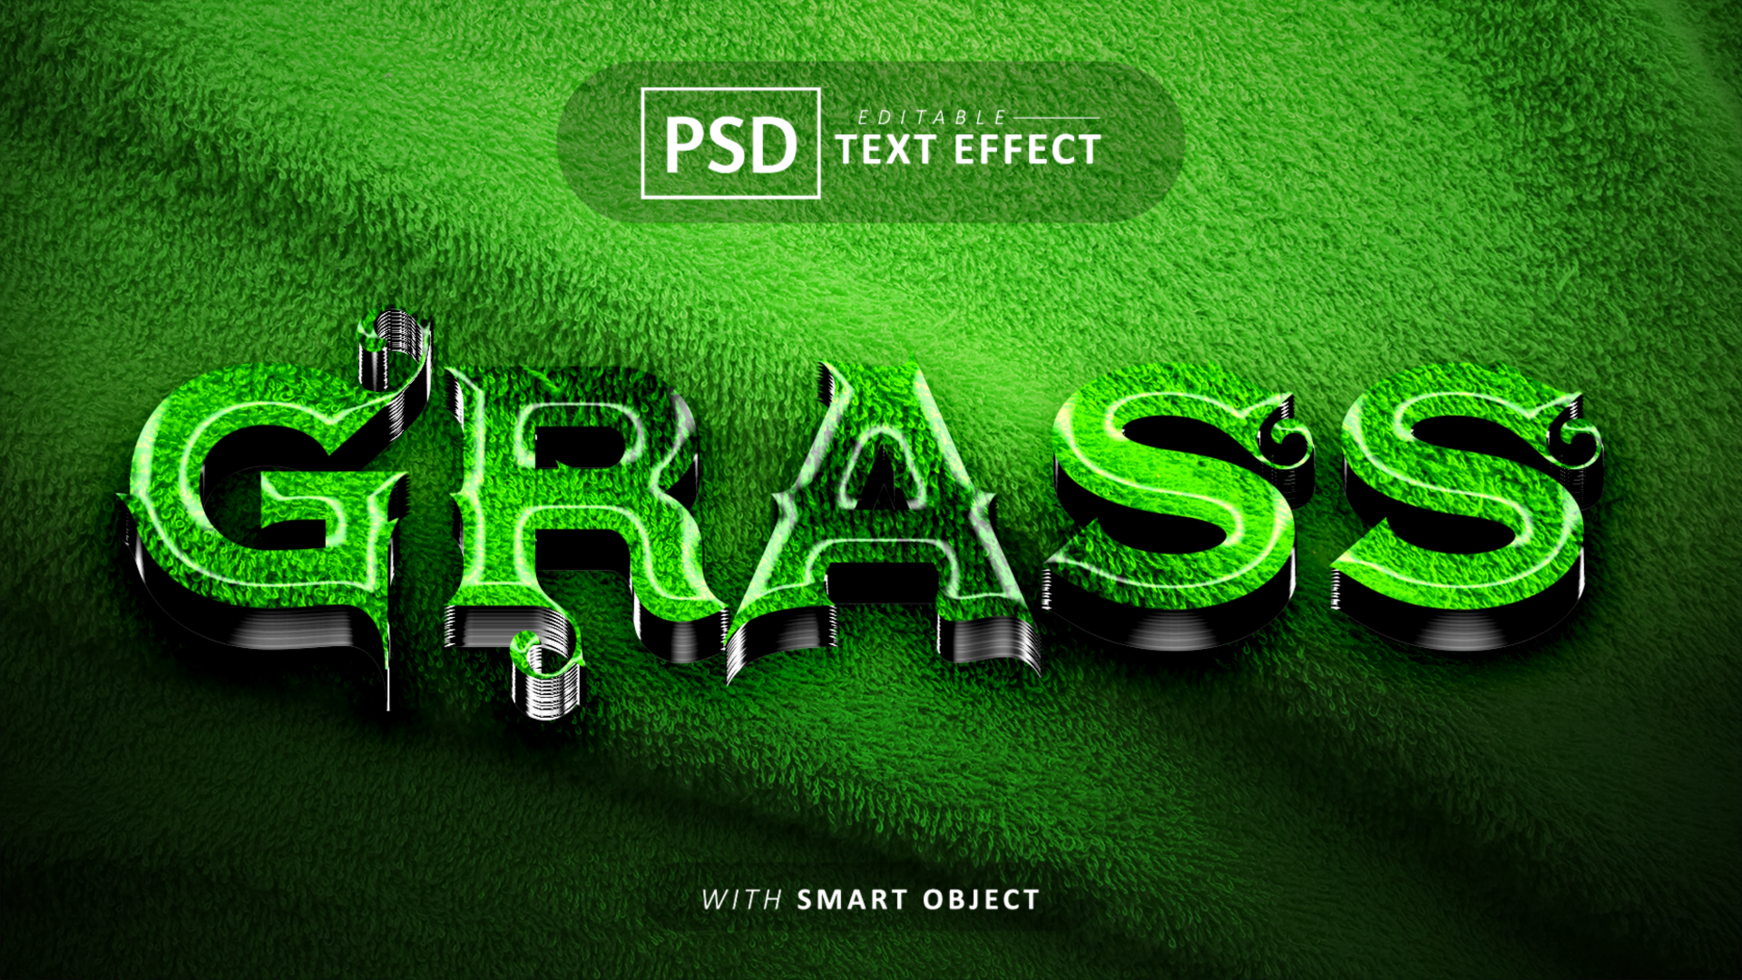 Grass text - editable 3d font effect psd